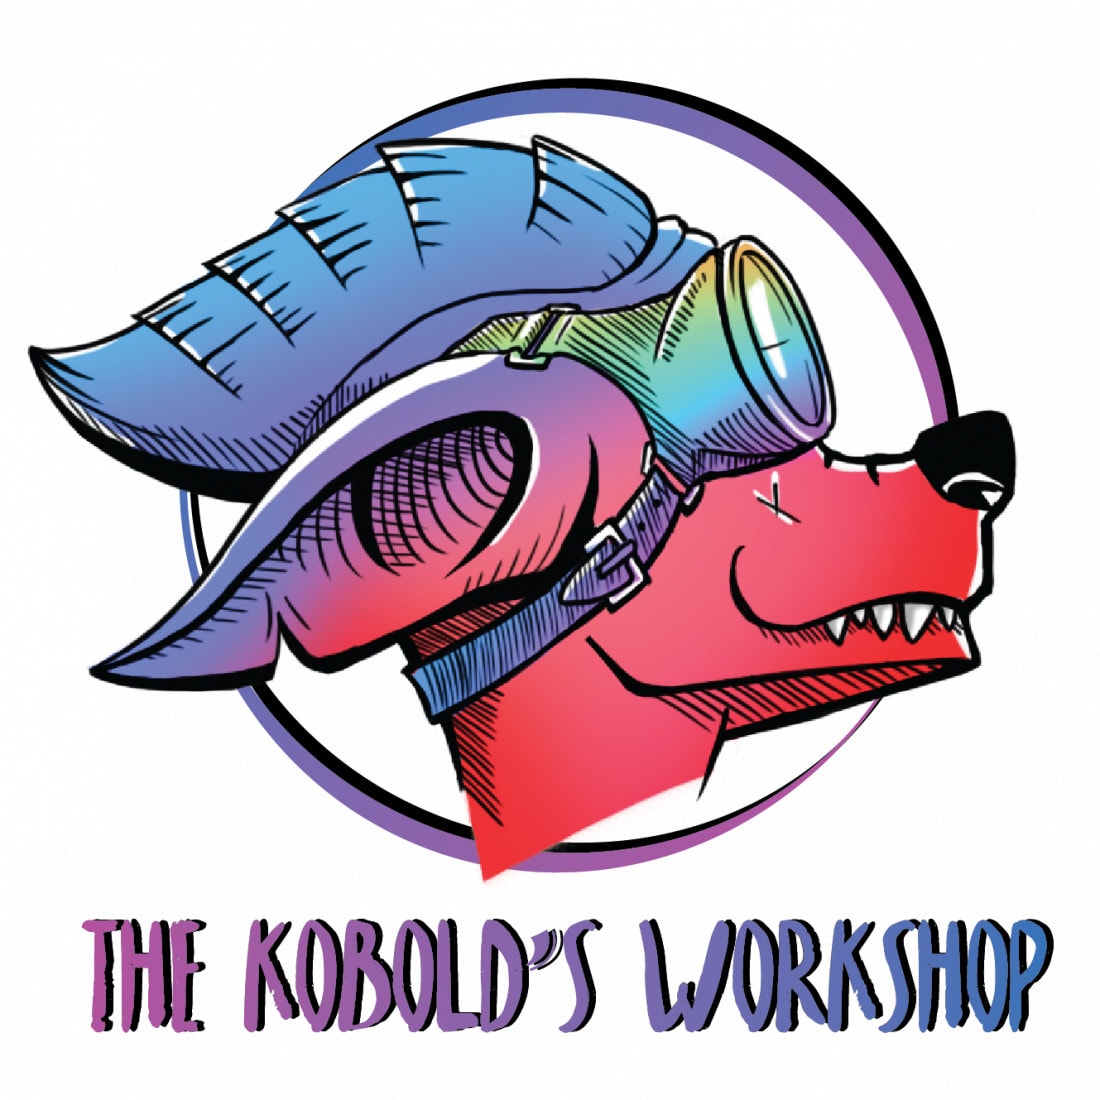 The Kobold's Workshop